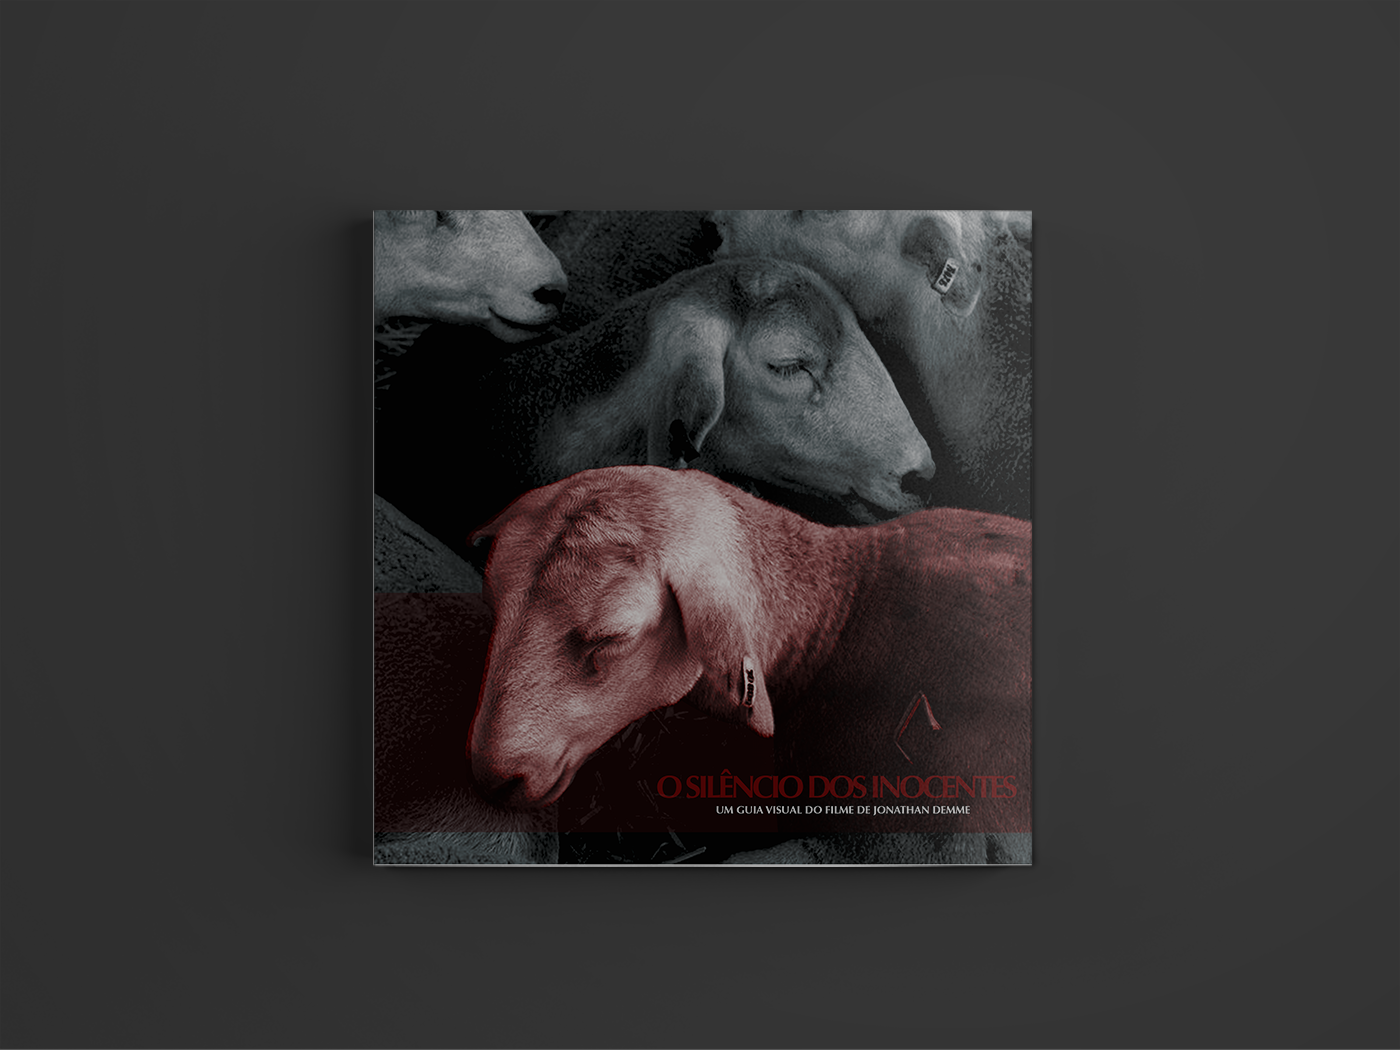 Adobe Portfolio book project projeto de livro design editorial silencio dos inocentes silence of the lambs